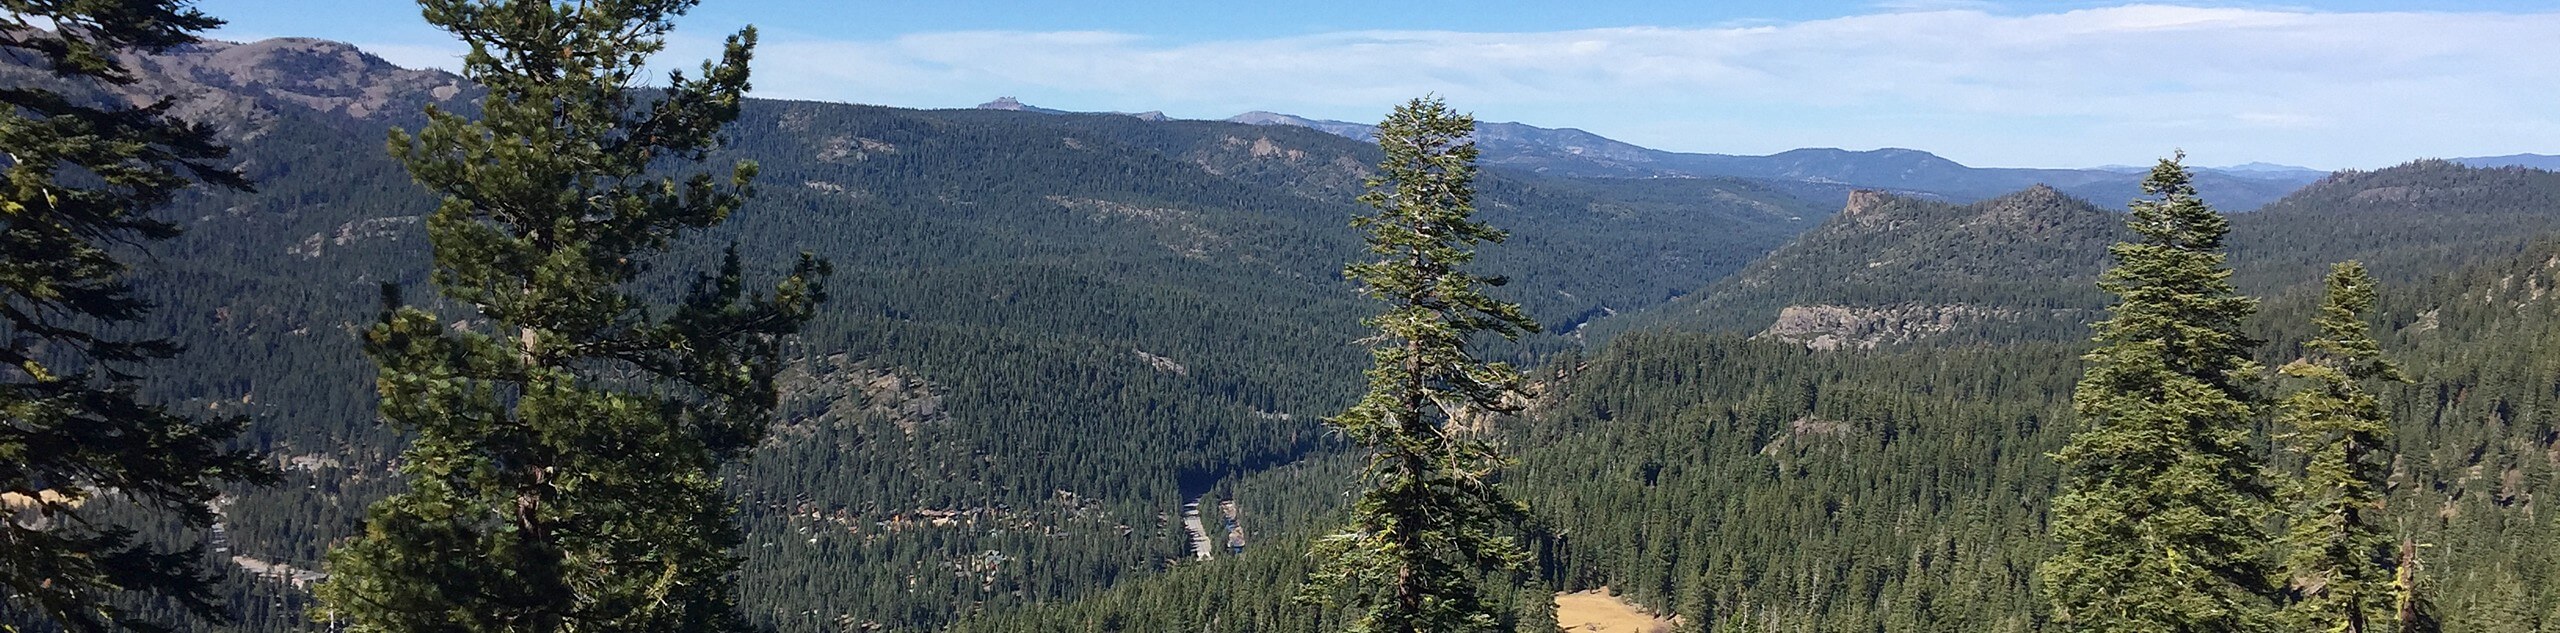 Tahoe City Rim Trail Loop